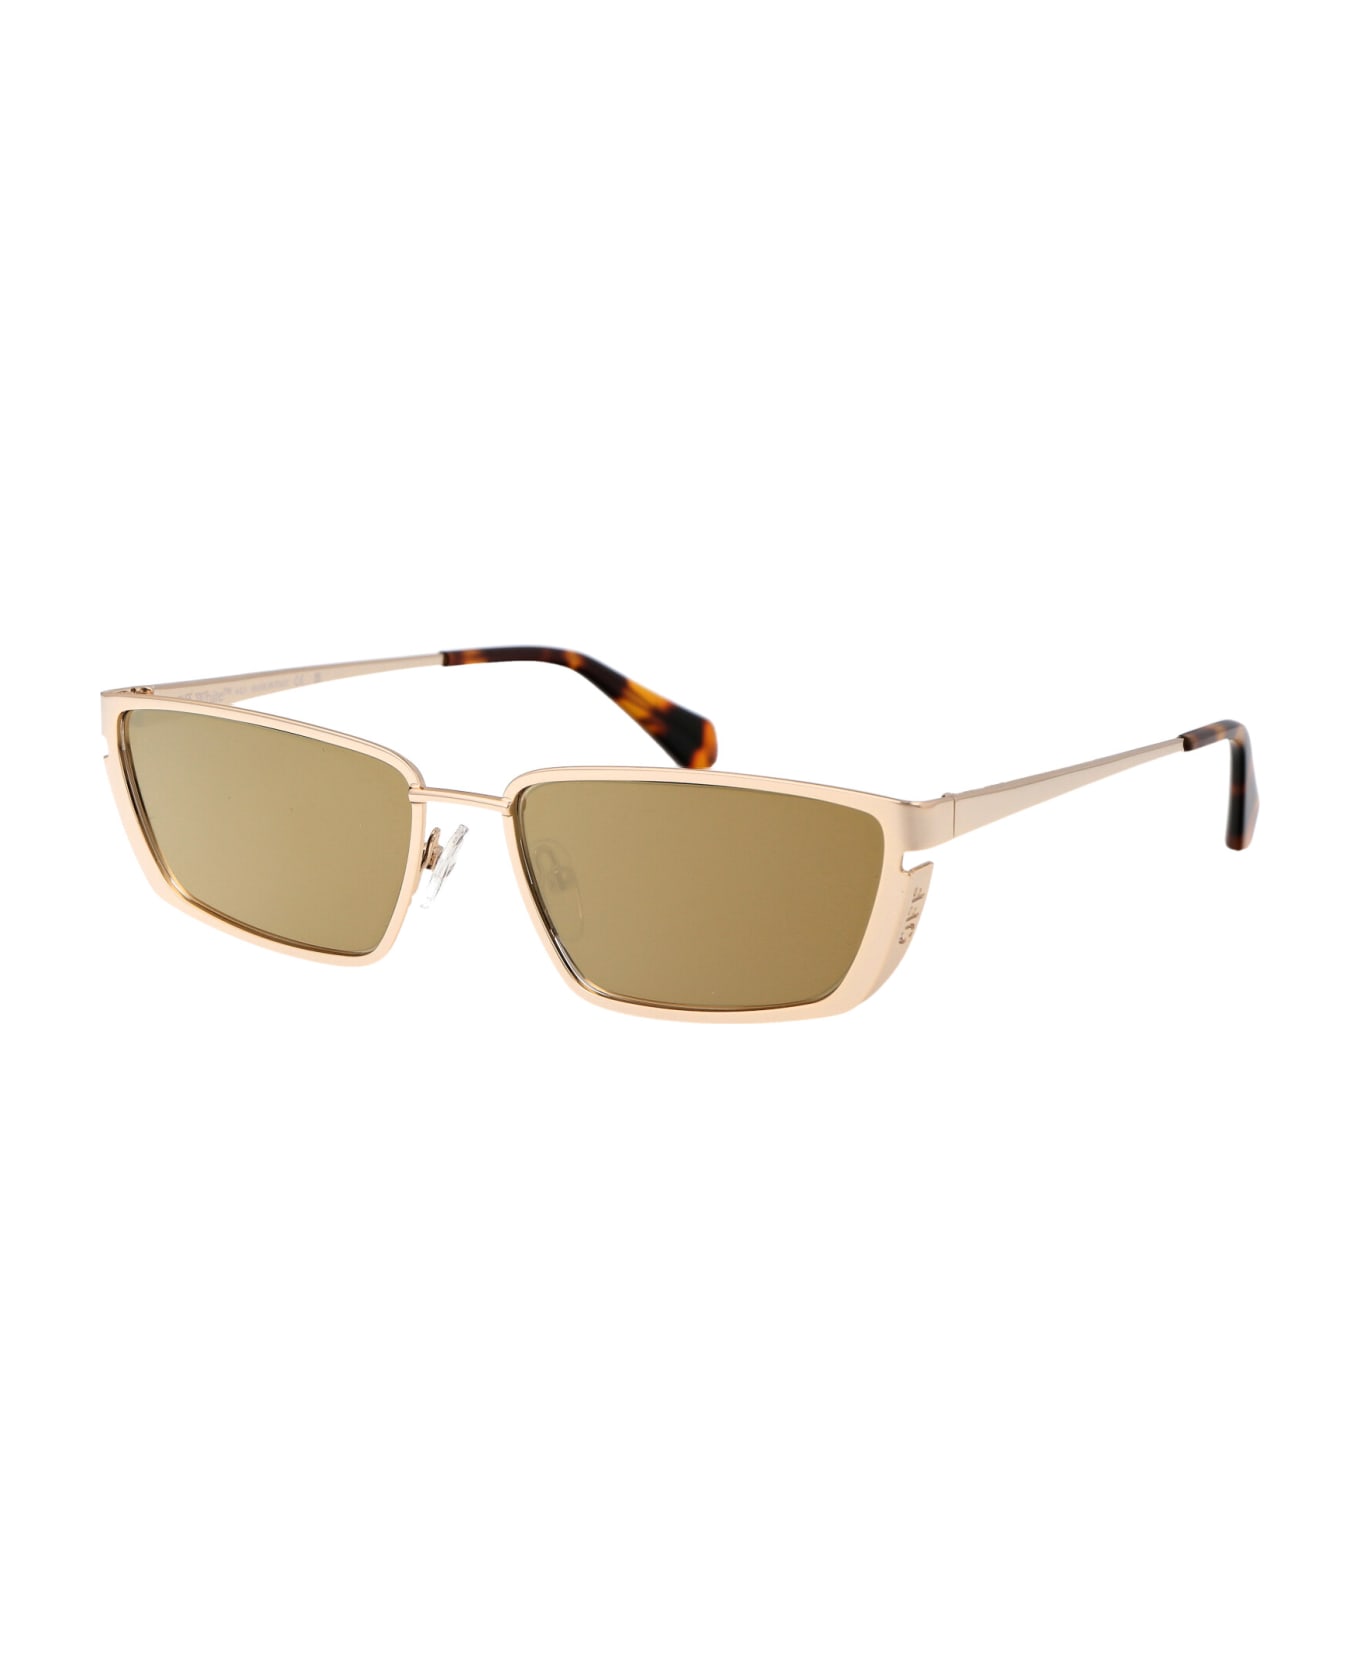 Off-White Richfield Sunglasses - 7676 GOLD GOLD 